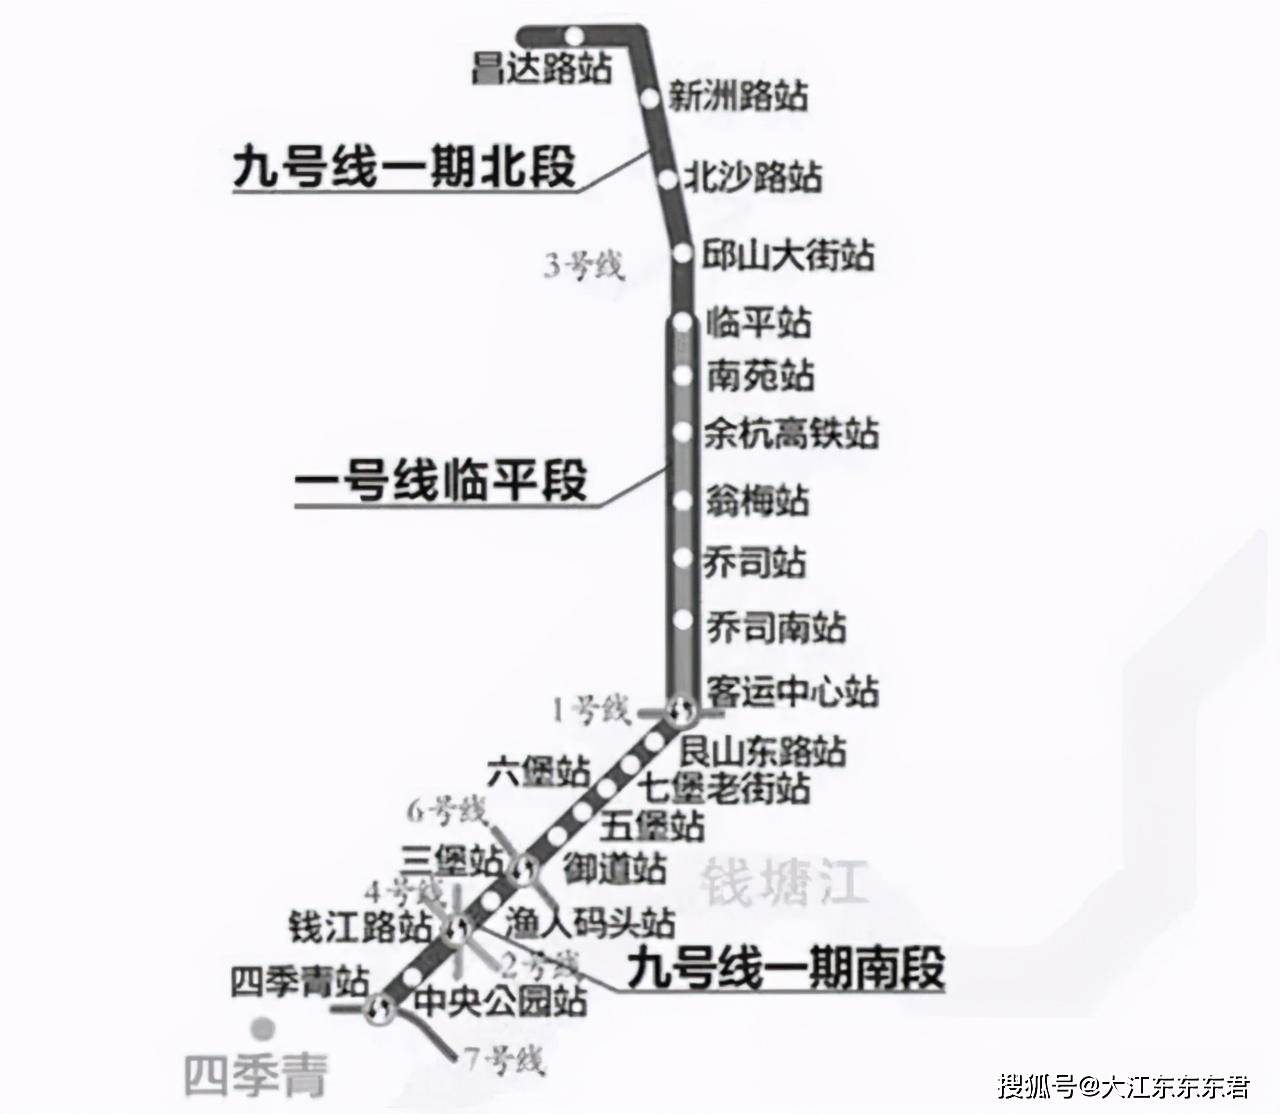 地铁新进展:杭州地铁1号线三期的站点亮灯 杭海城际铁路全线"电通"